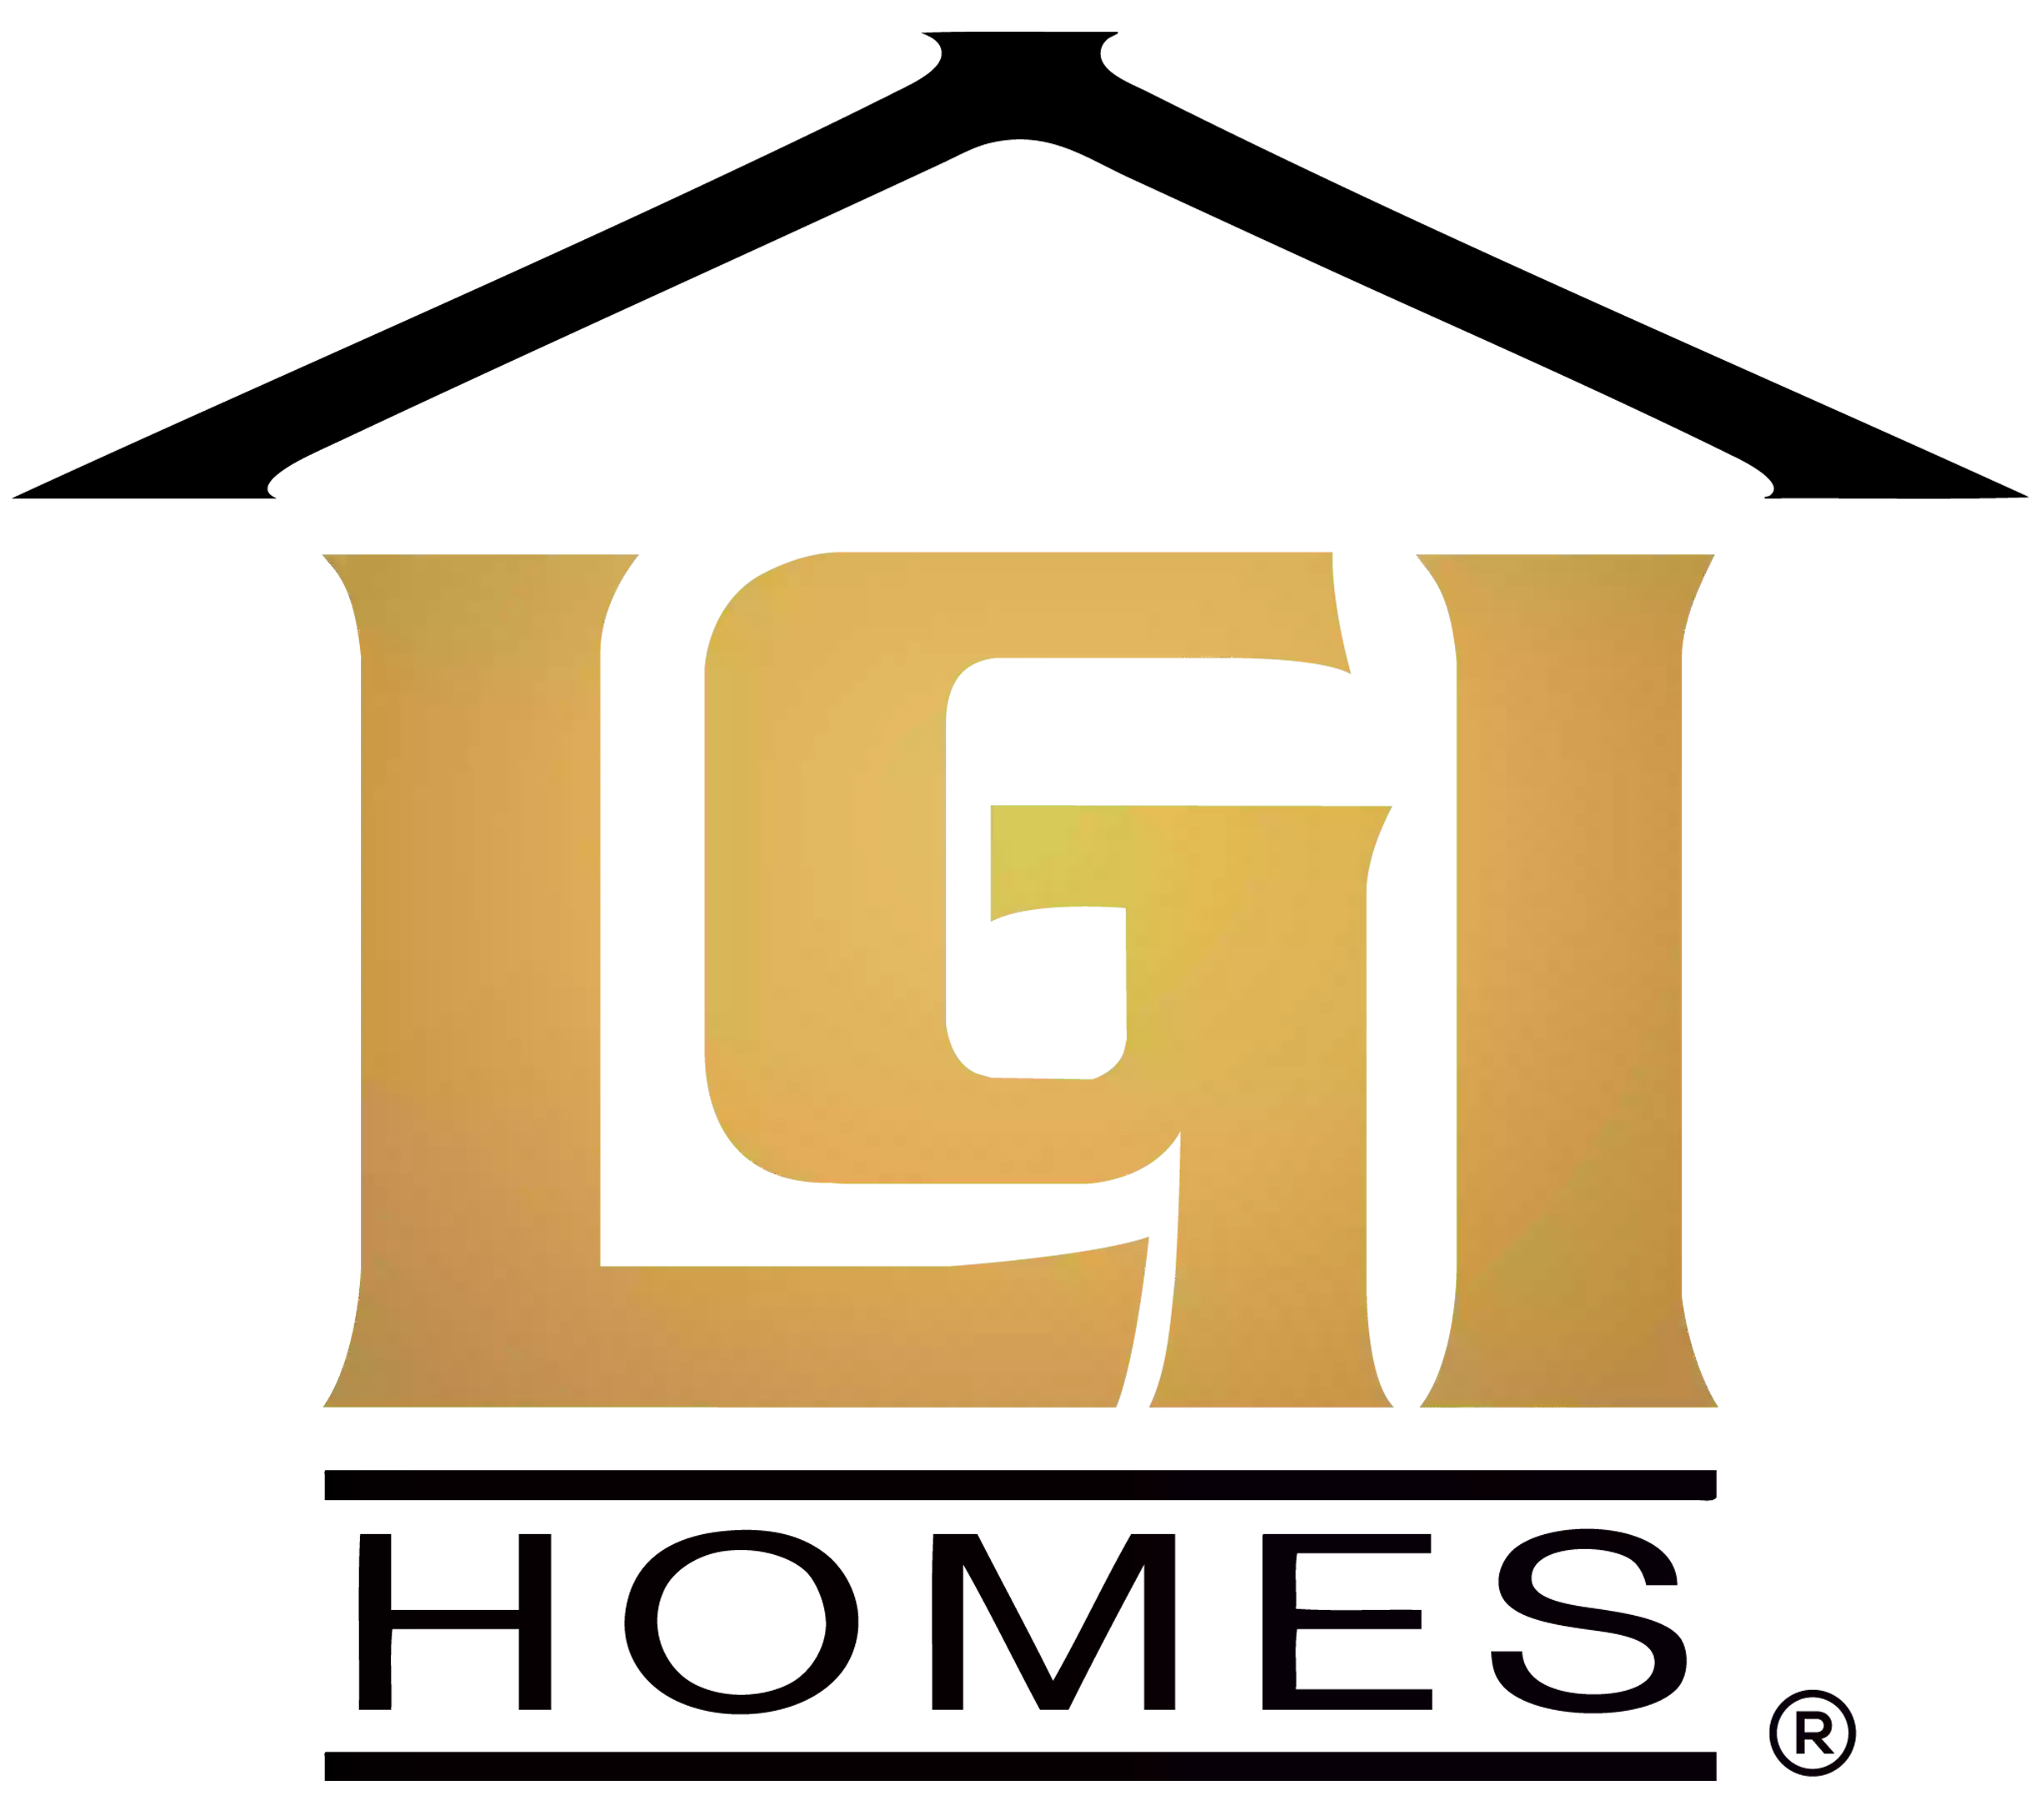 LGI Homes - Whitmore